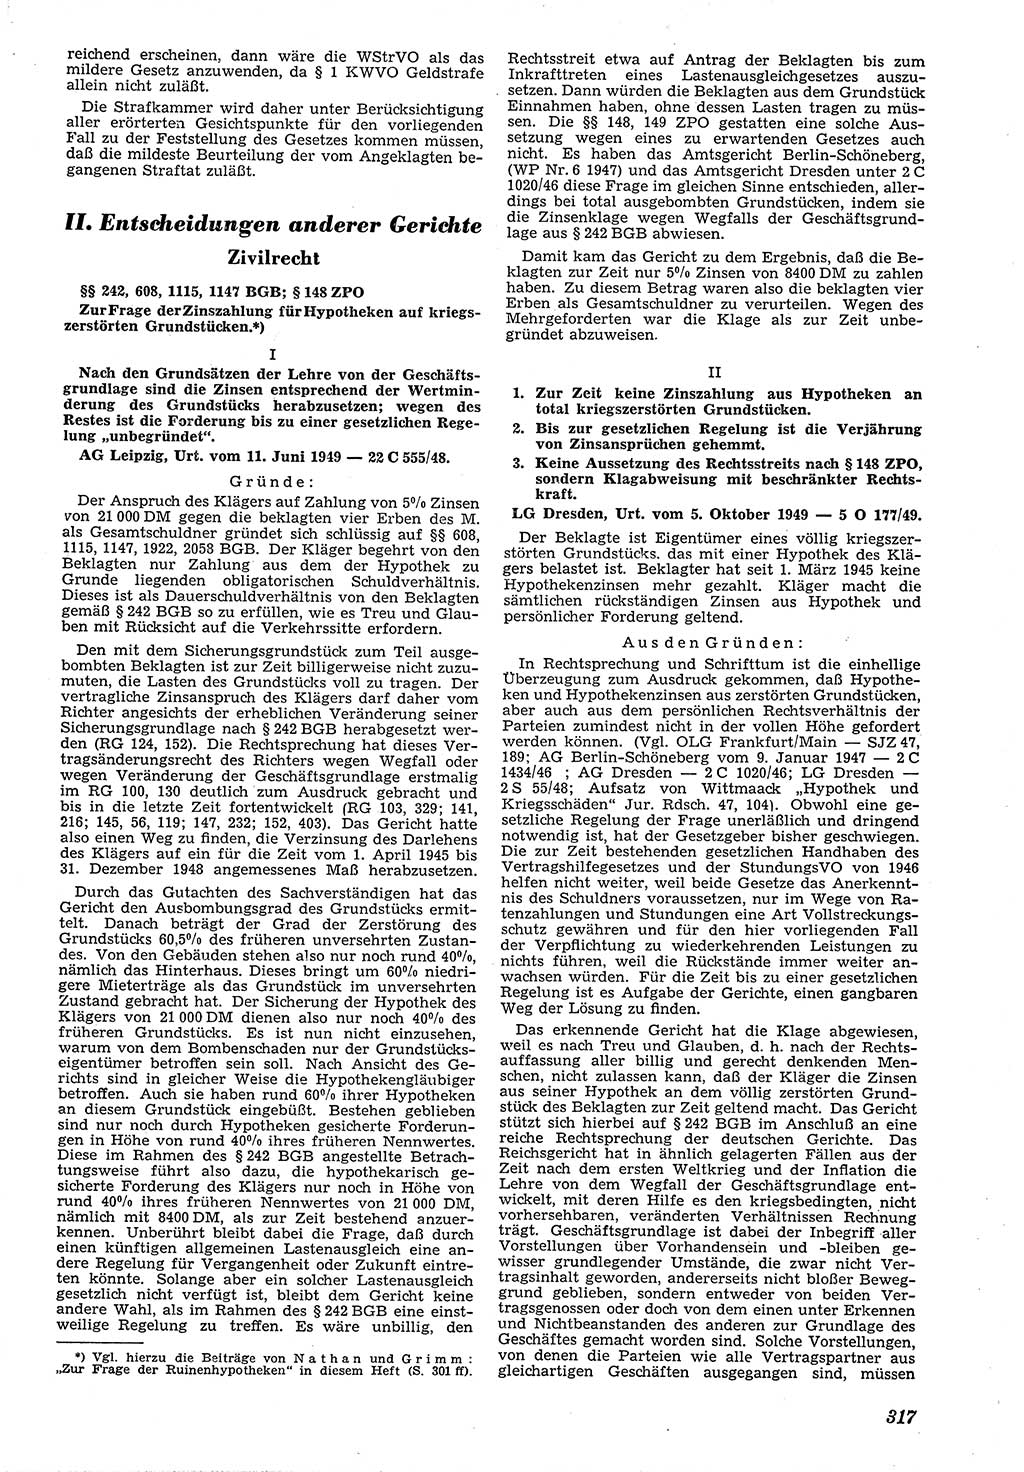 Neue Justiz (NJ), Zeitschrift für Recht und Rechtswissenschaft [Deutsche Demokratische Republik (DDR)], 4. Jahrgang 1950, Seite 317 (NJ DDR 1950, S. 317)